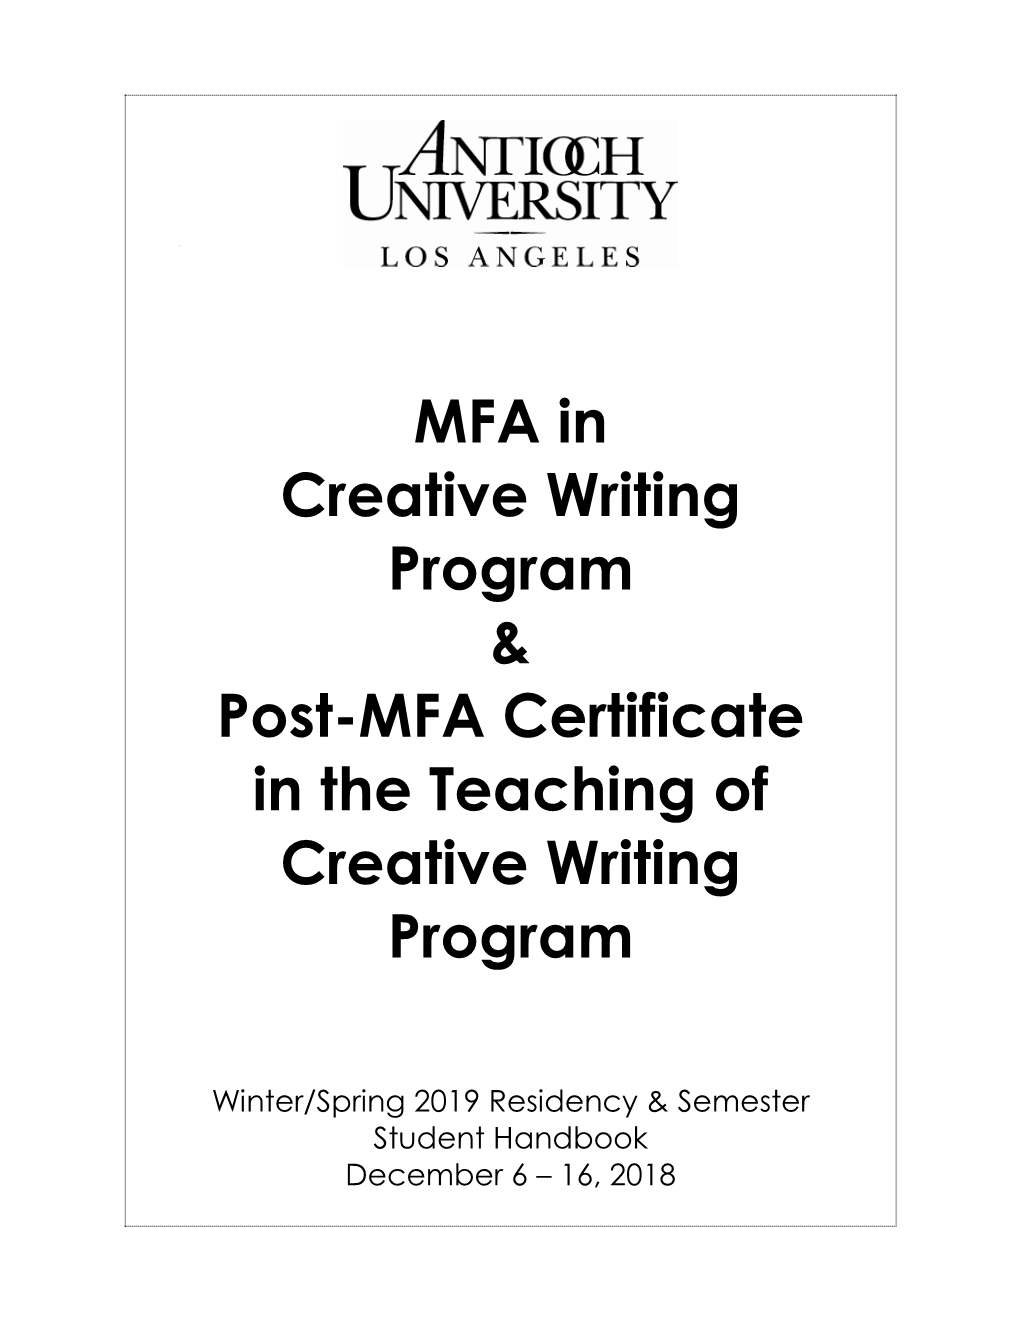 MFA in Creative Writing Program & Post-MFA